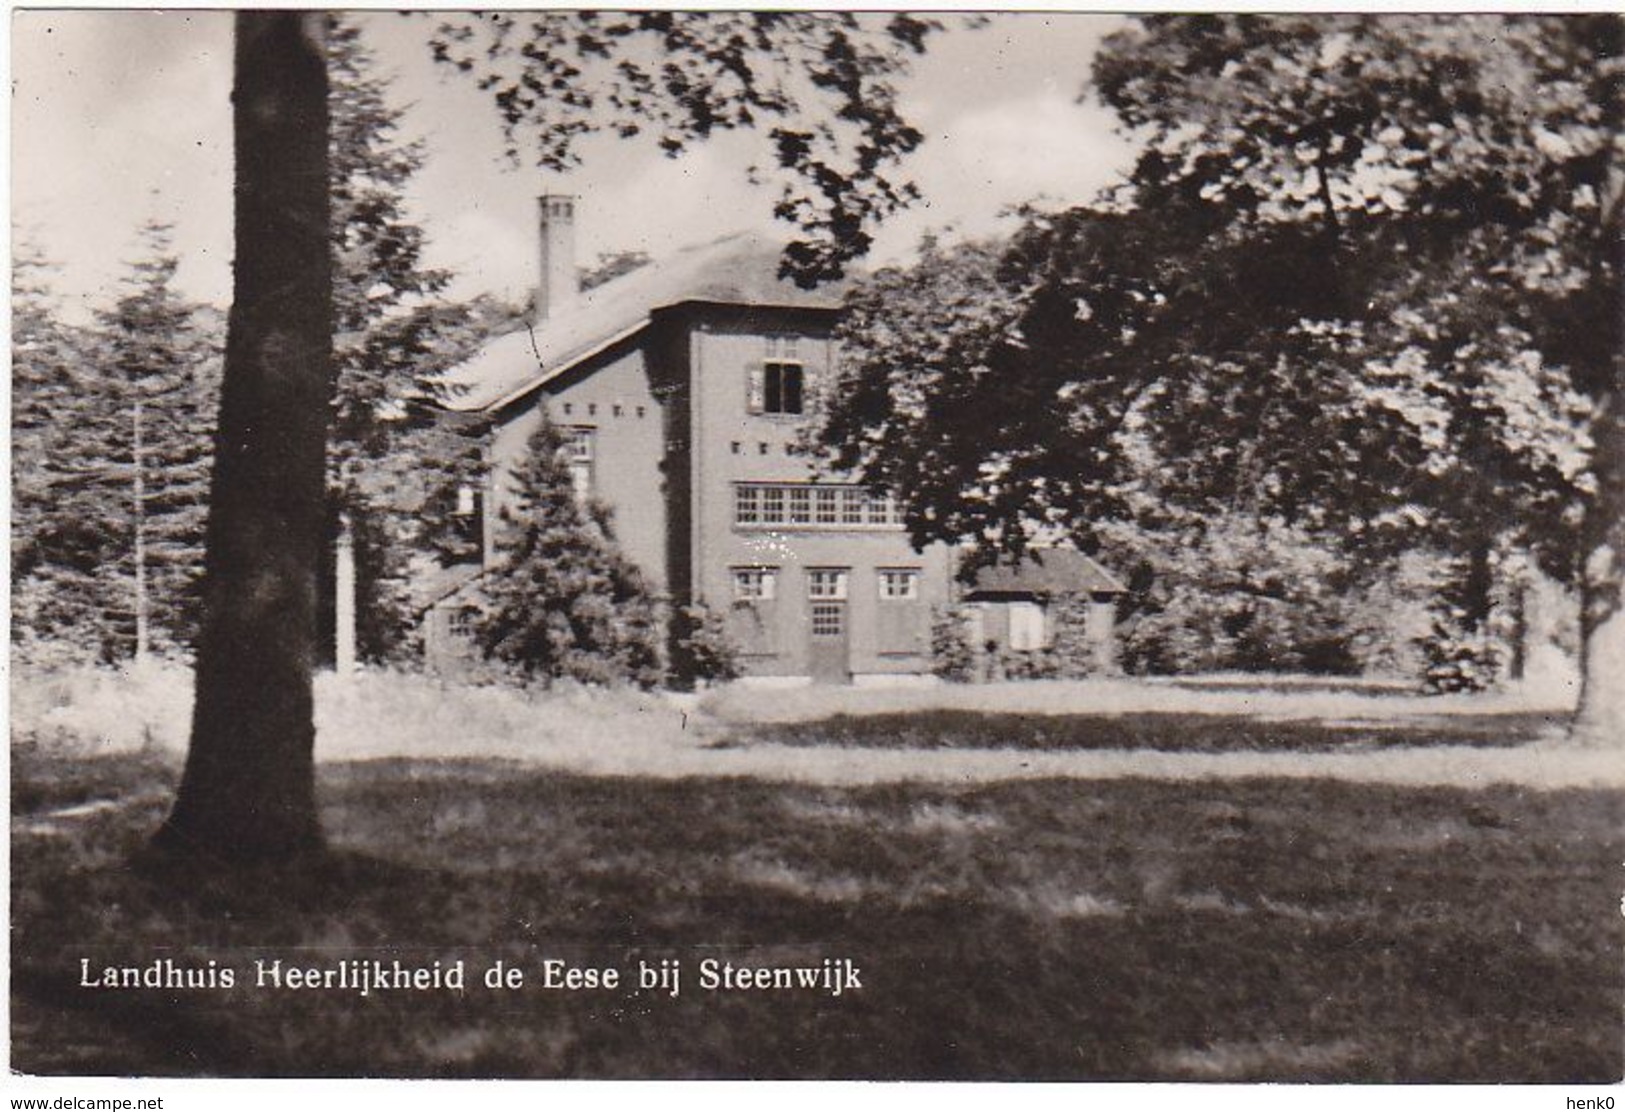 Steenwijk Landhuis Heerlijkheid De Eese M432 - Steenwijk